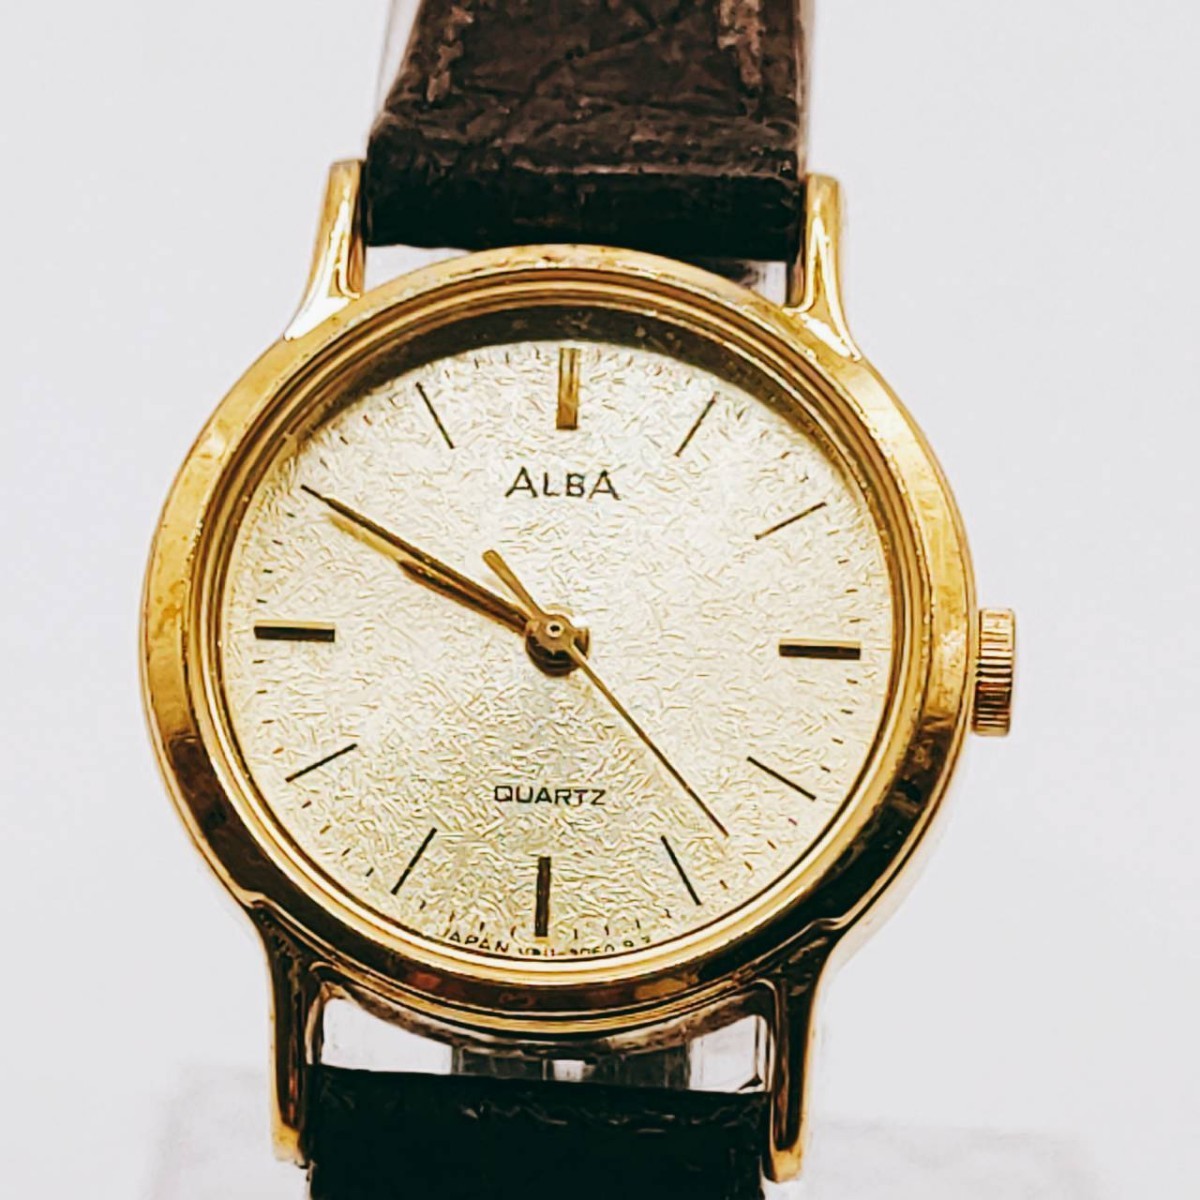 #4 SEIKO セイコー ALBA アルバ V811-D780 腕時計 クウォーツ 3針 金色文字盤 ゴールド基調 時計 とけい トケイ アクセサリー ヴィンテージ_画像1